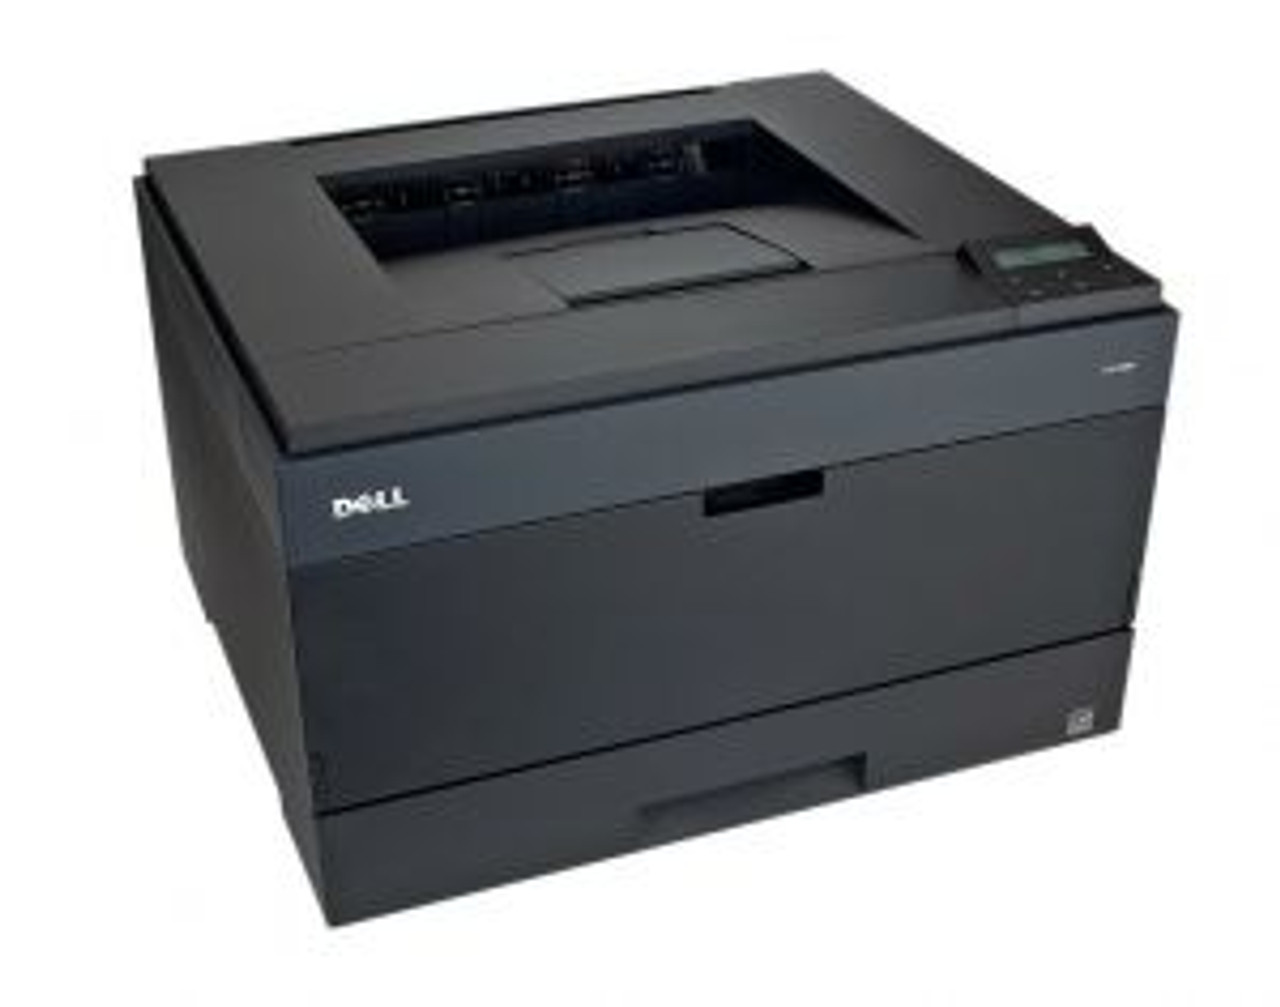 2330D Dell Monochrome Laser Printer